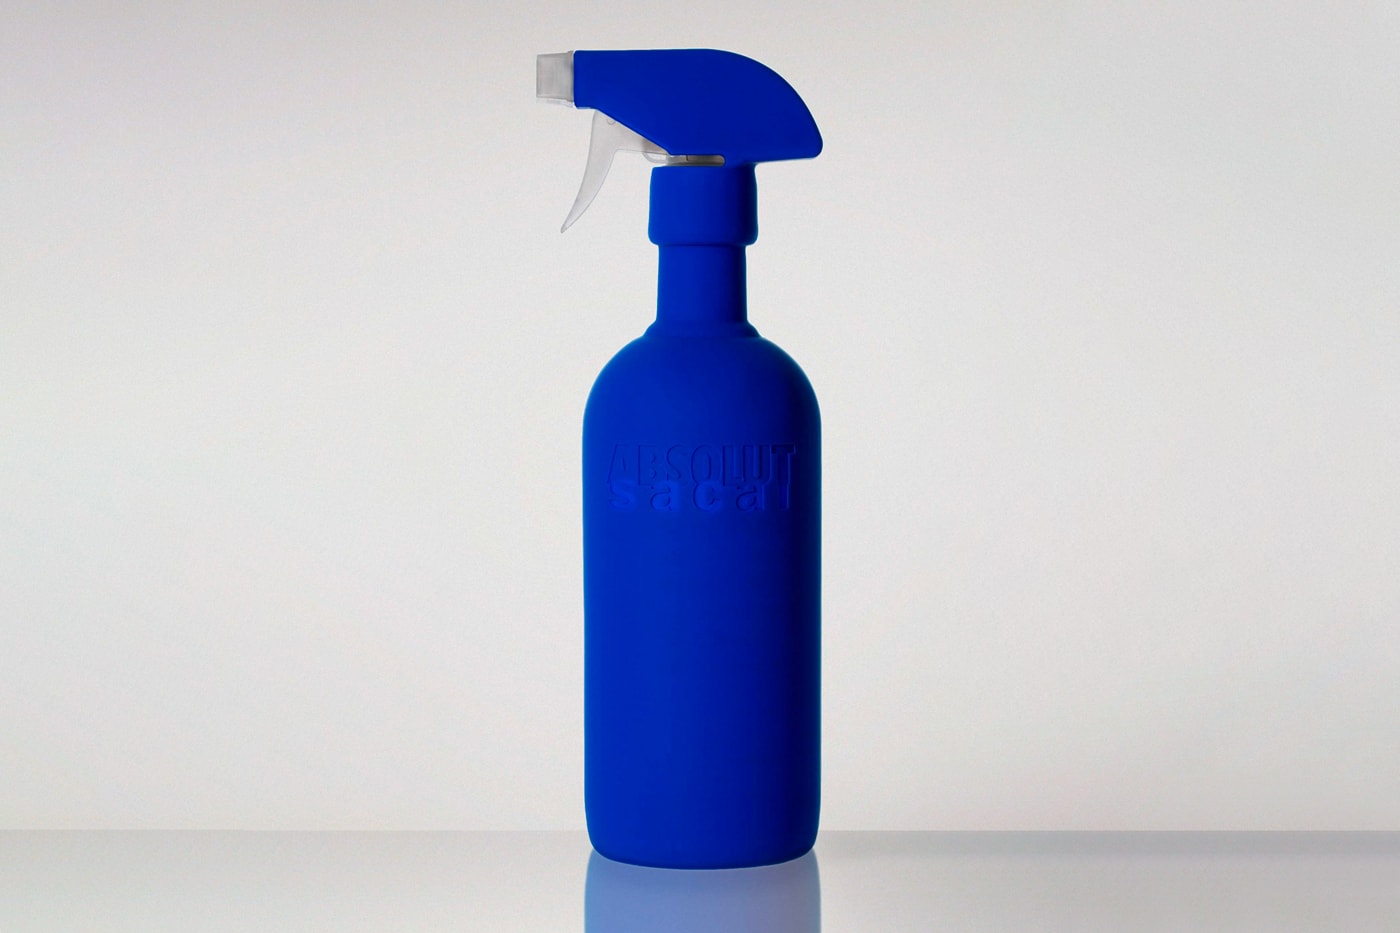 サカイがスウェーデンのウォッカブランド アブソルートとのコラボボトルセットを発表 sacai x absolut Limited Edition Bottle Set Unveil